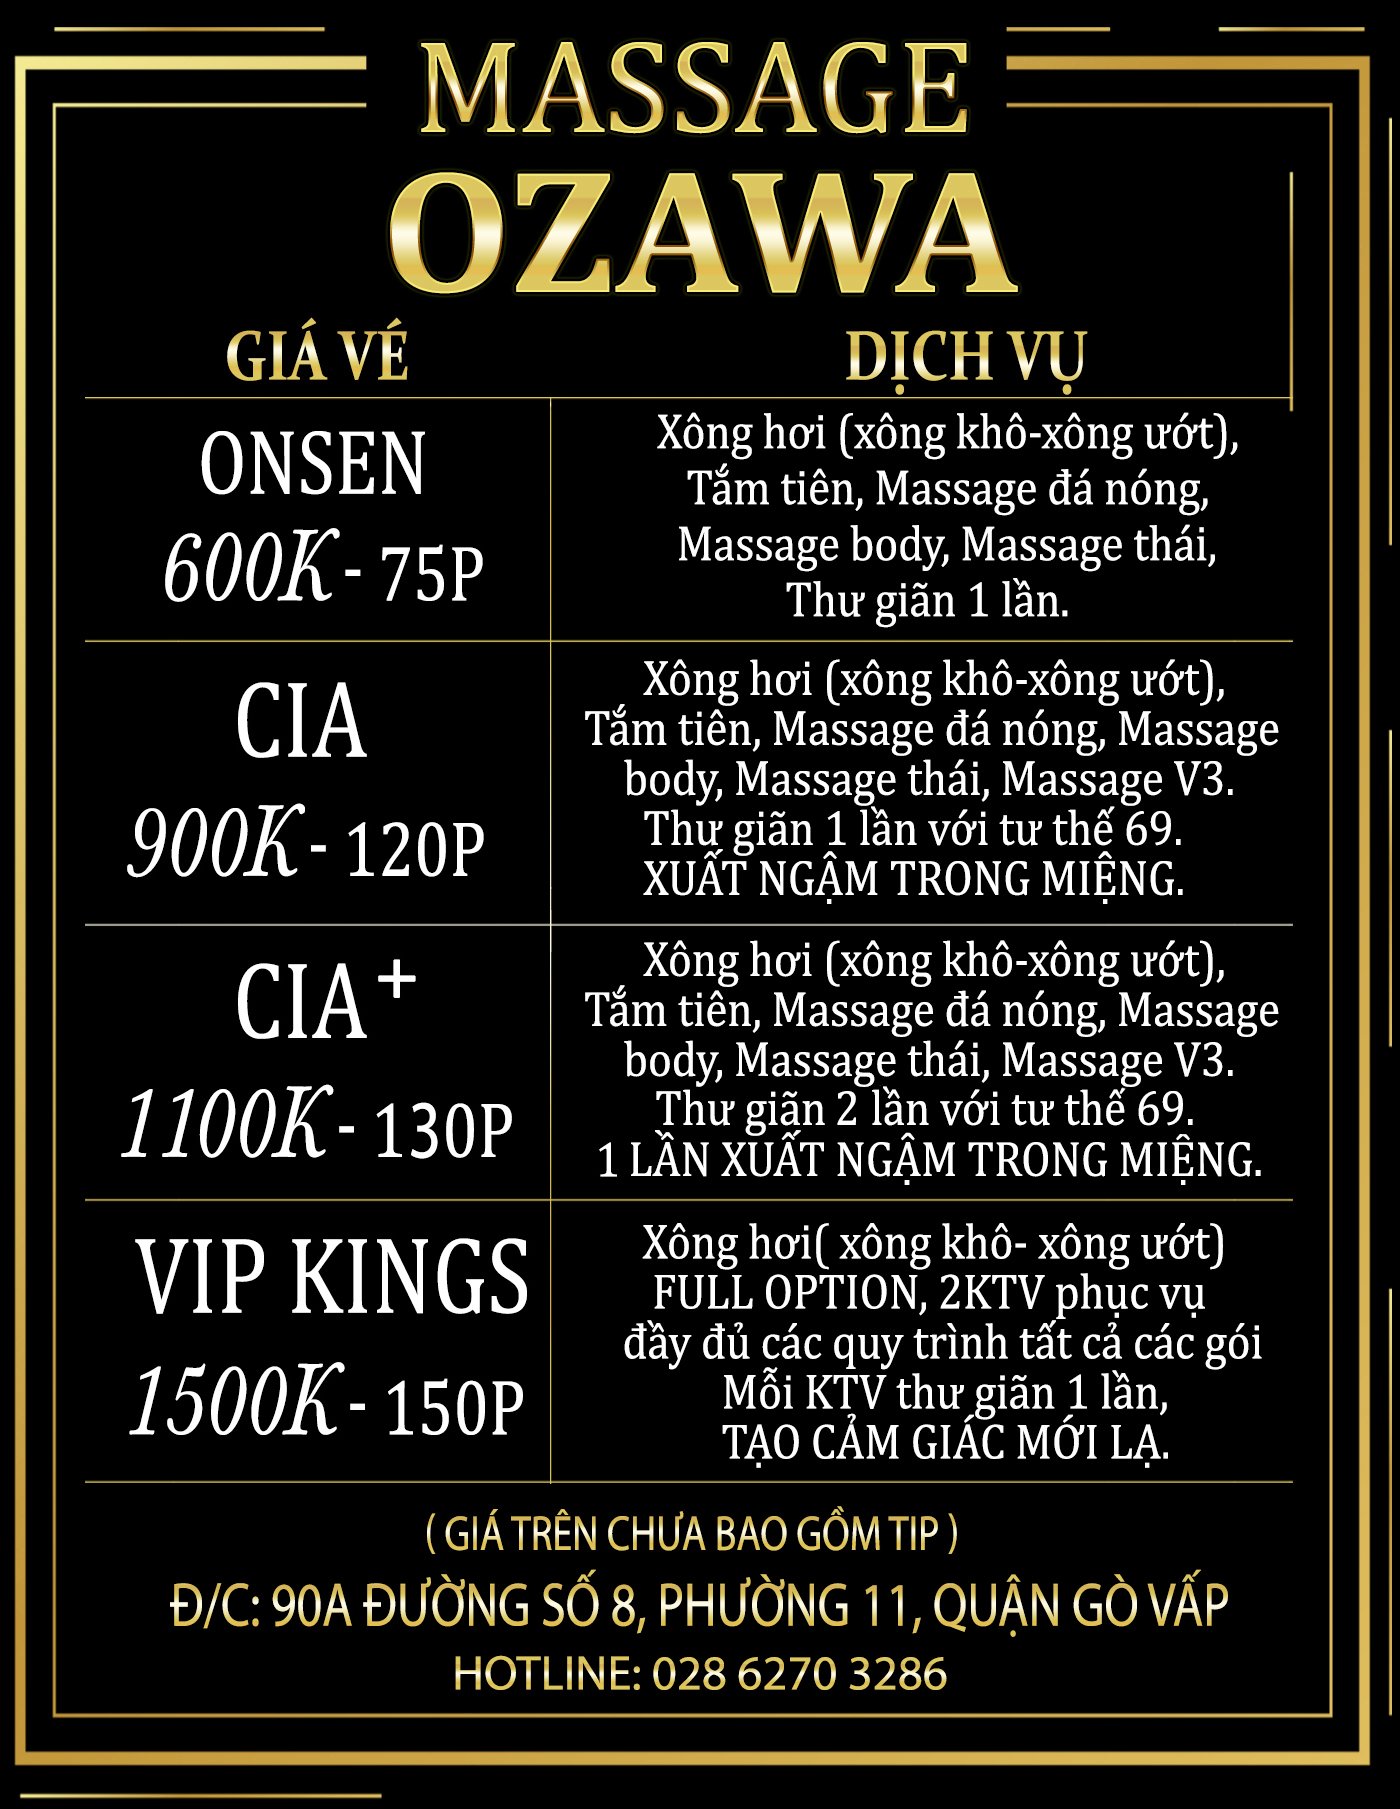 Bảng giá vé massage Ozawa Gò Vấp